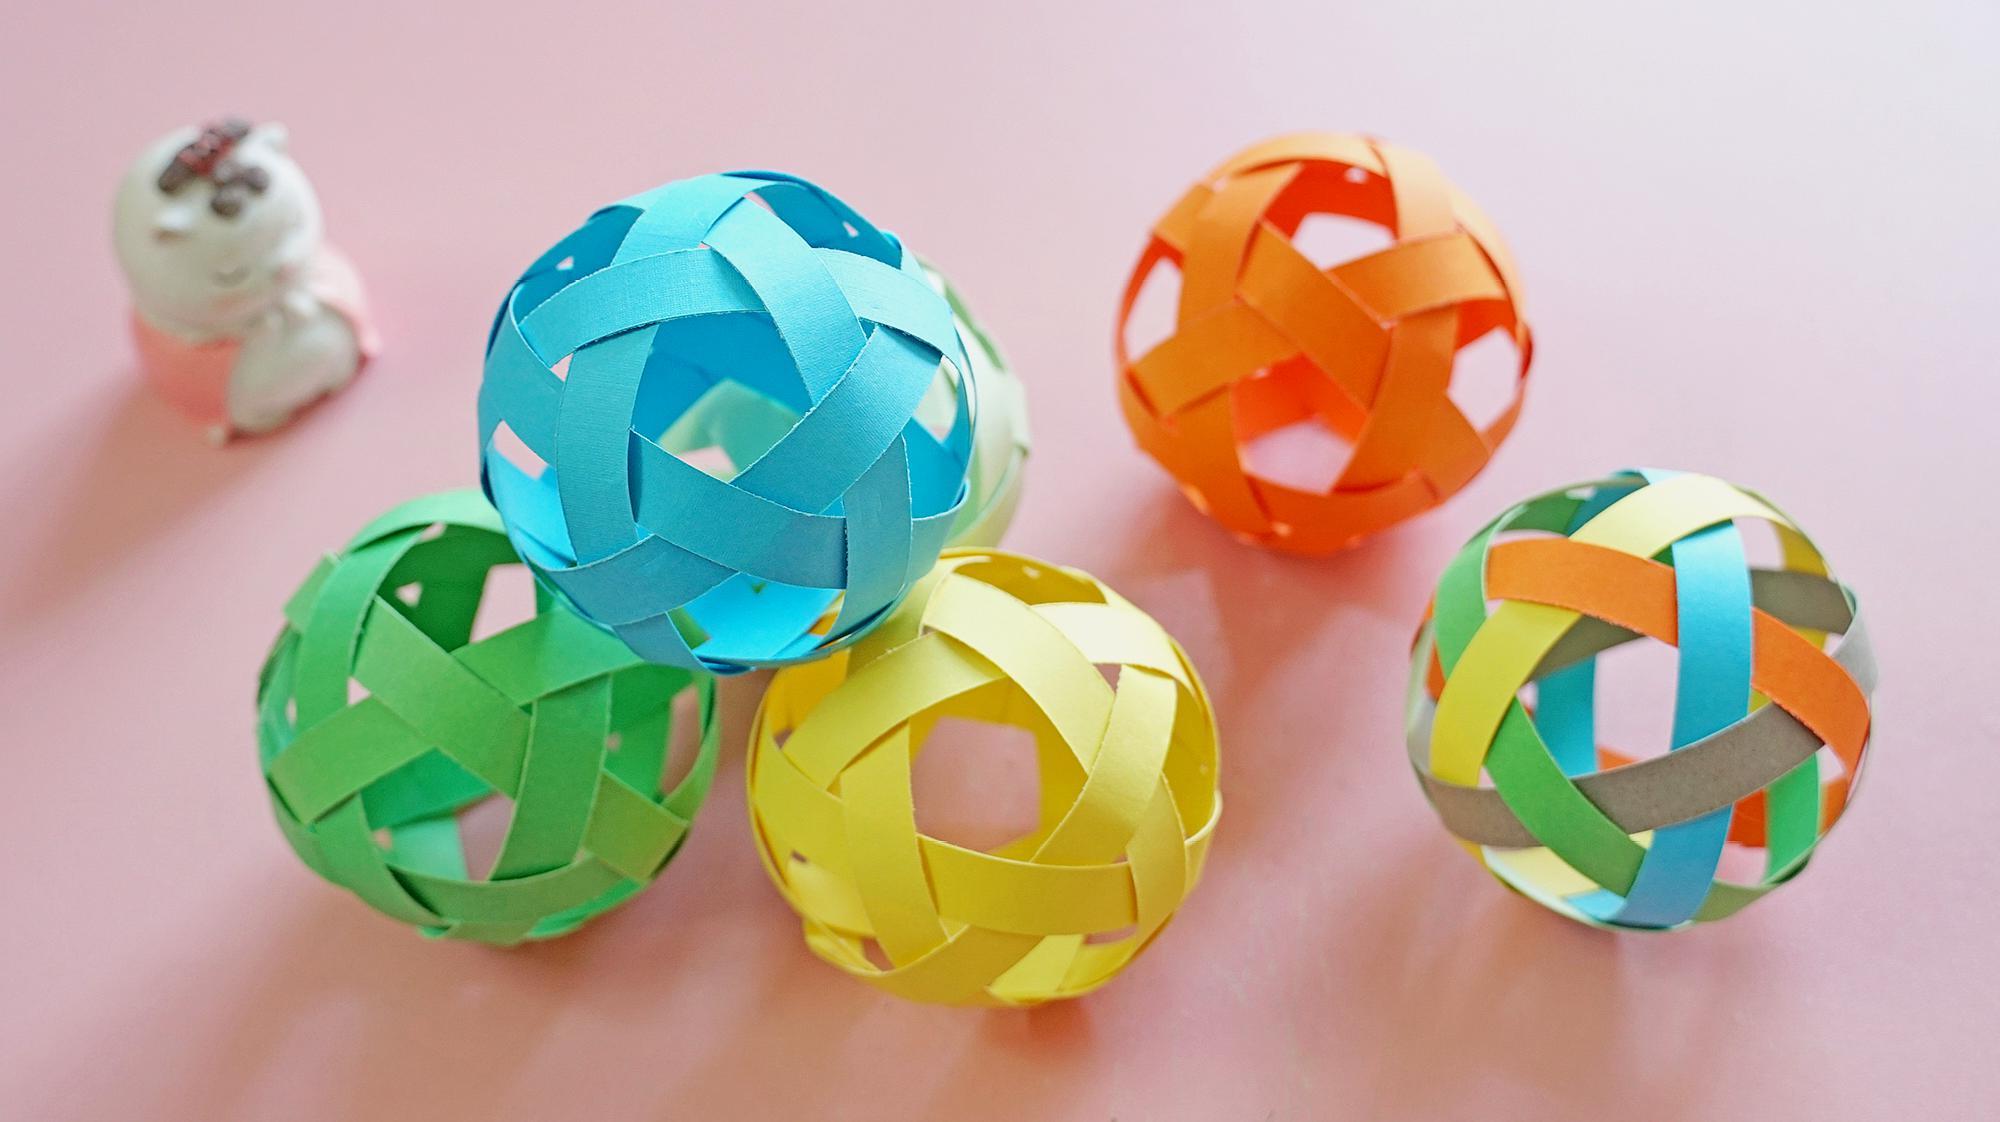 用卡纸条编织的小纸球,每个面都是一颗五角星,可以当作小装饰!